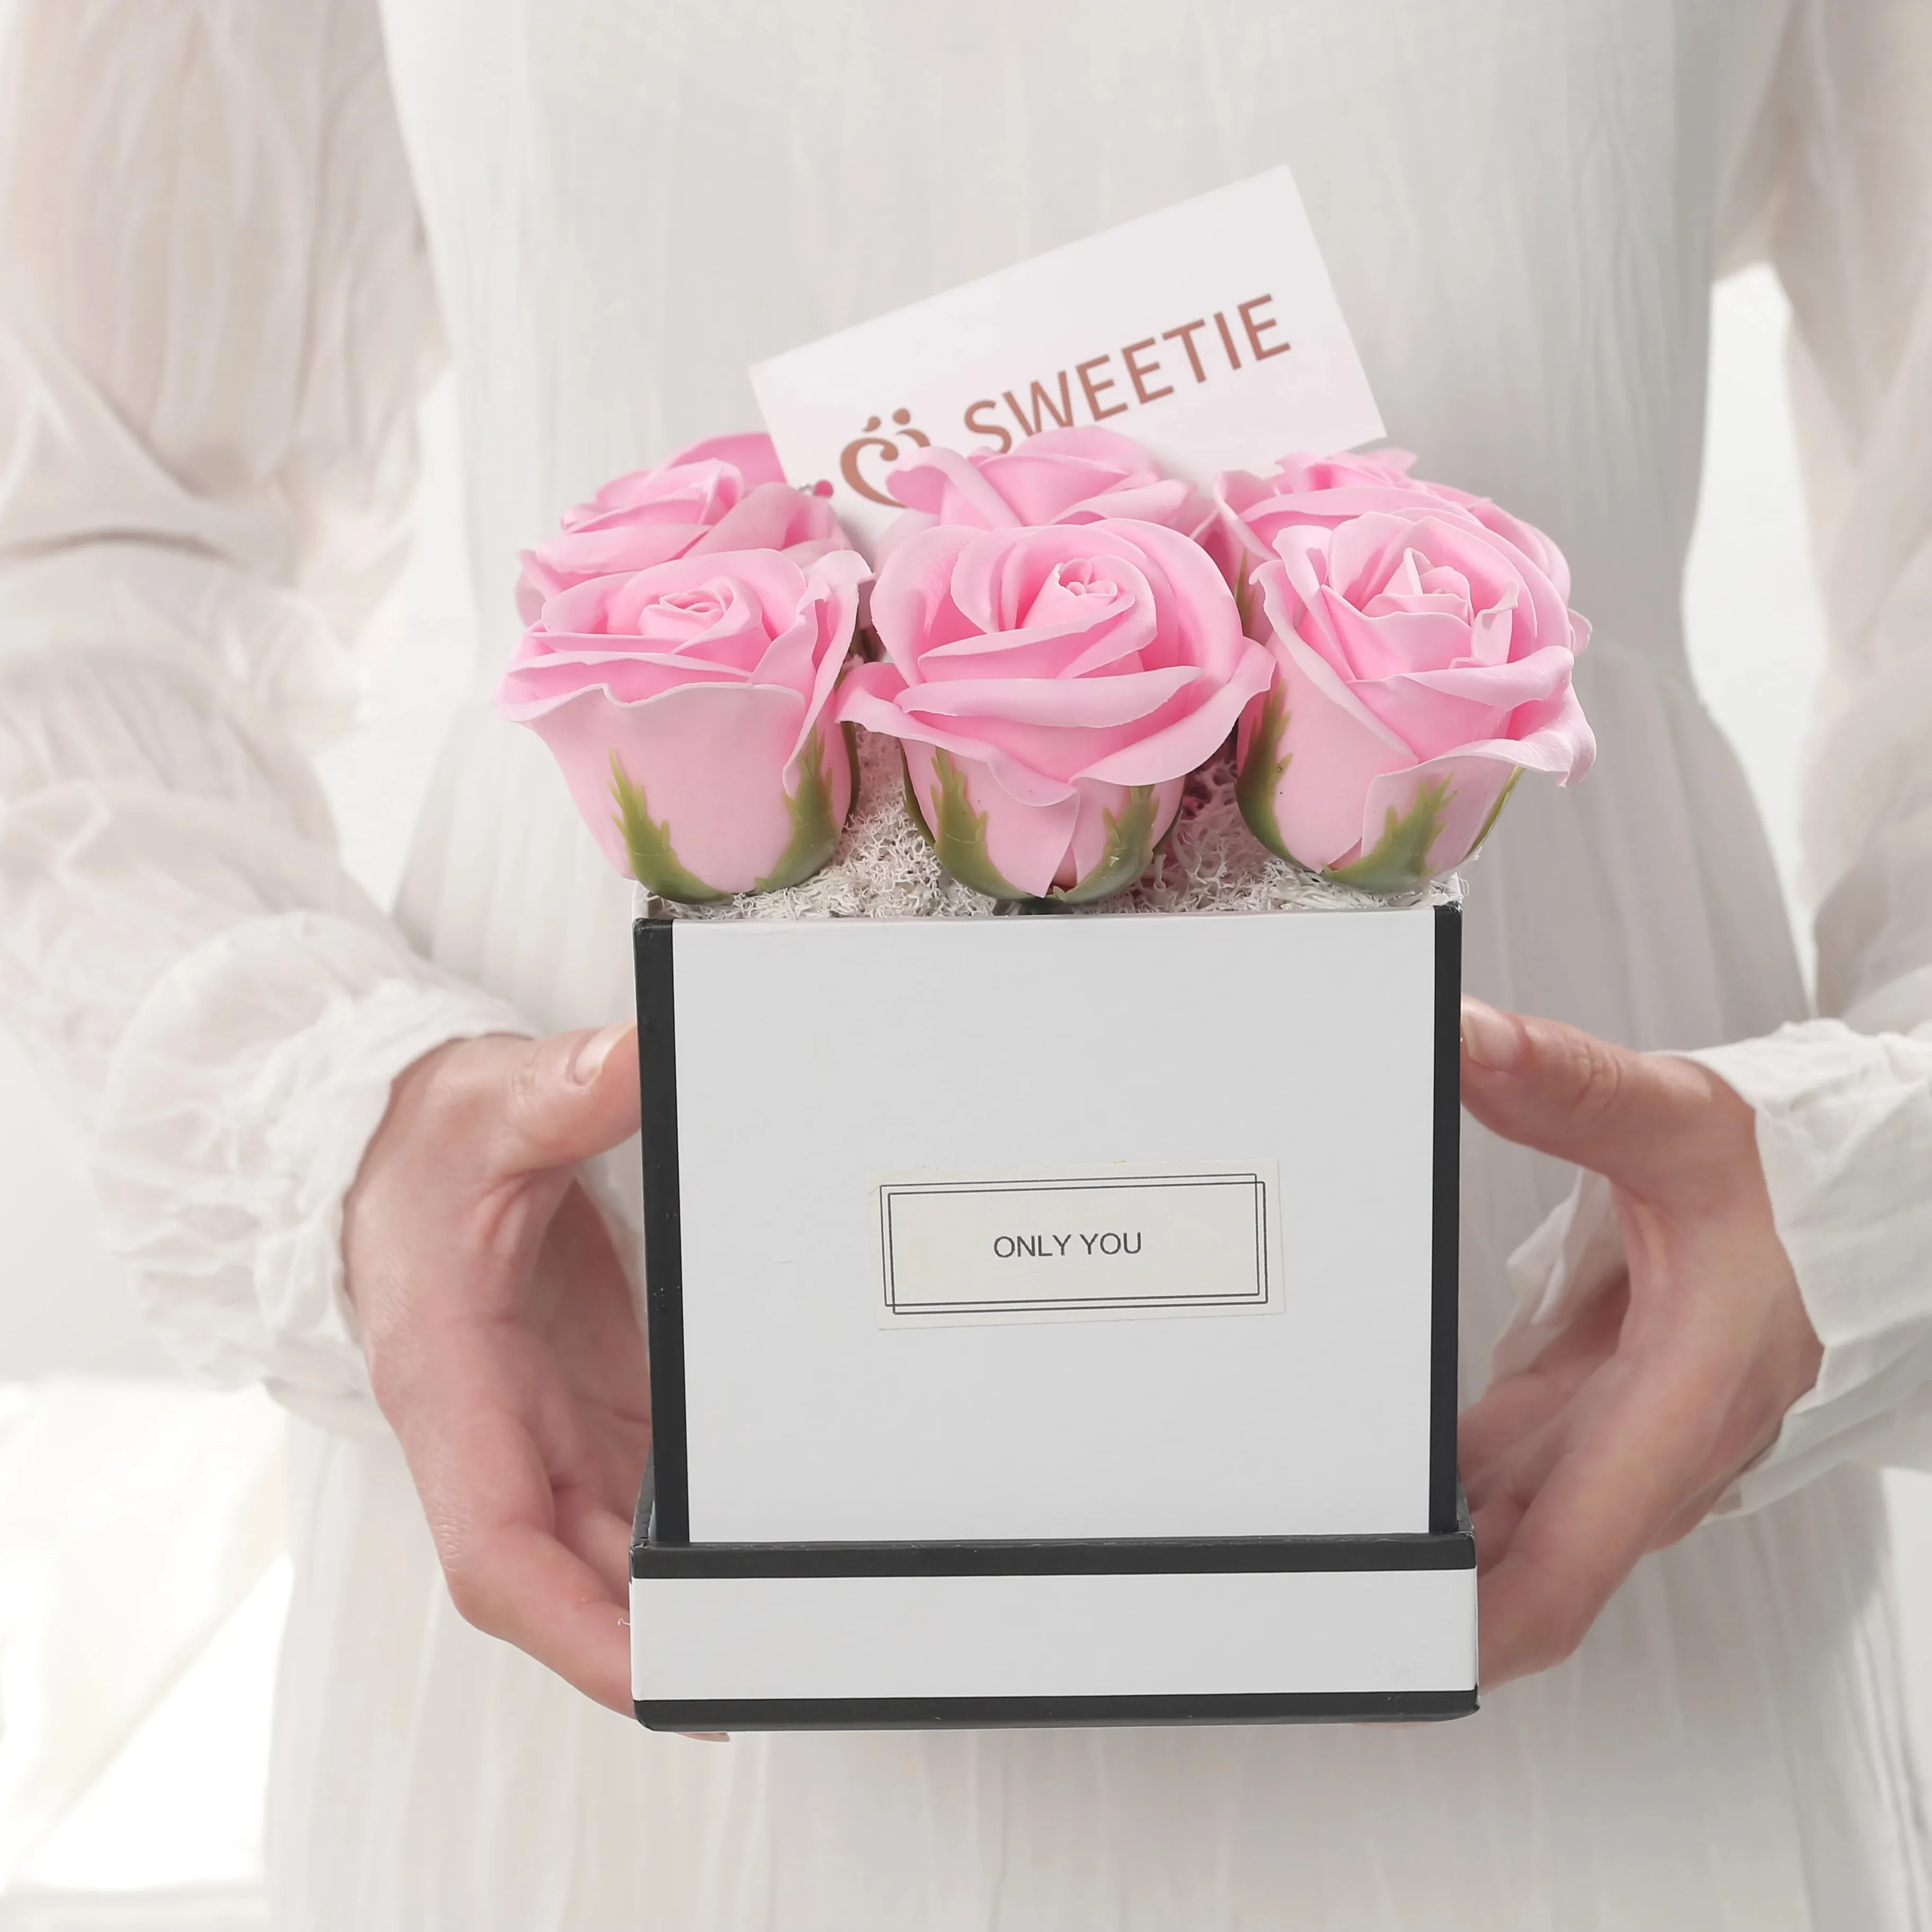 Оптовая продажа высокое качество домашнее свадебное украшение 9 Розовое Мыло розы Искусственные цветы розы в квадратной подарочной коробке на День Святого Валентина